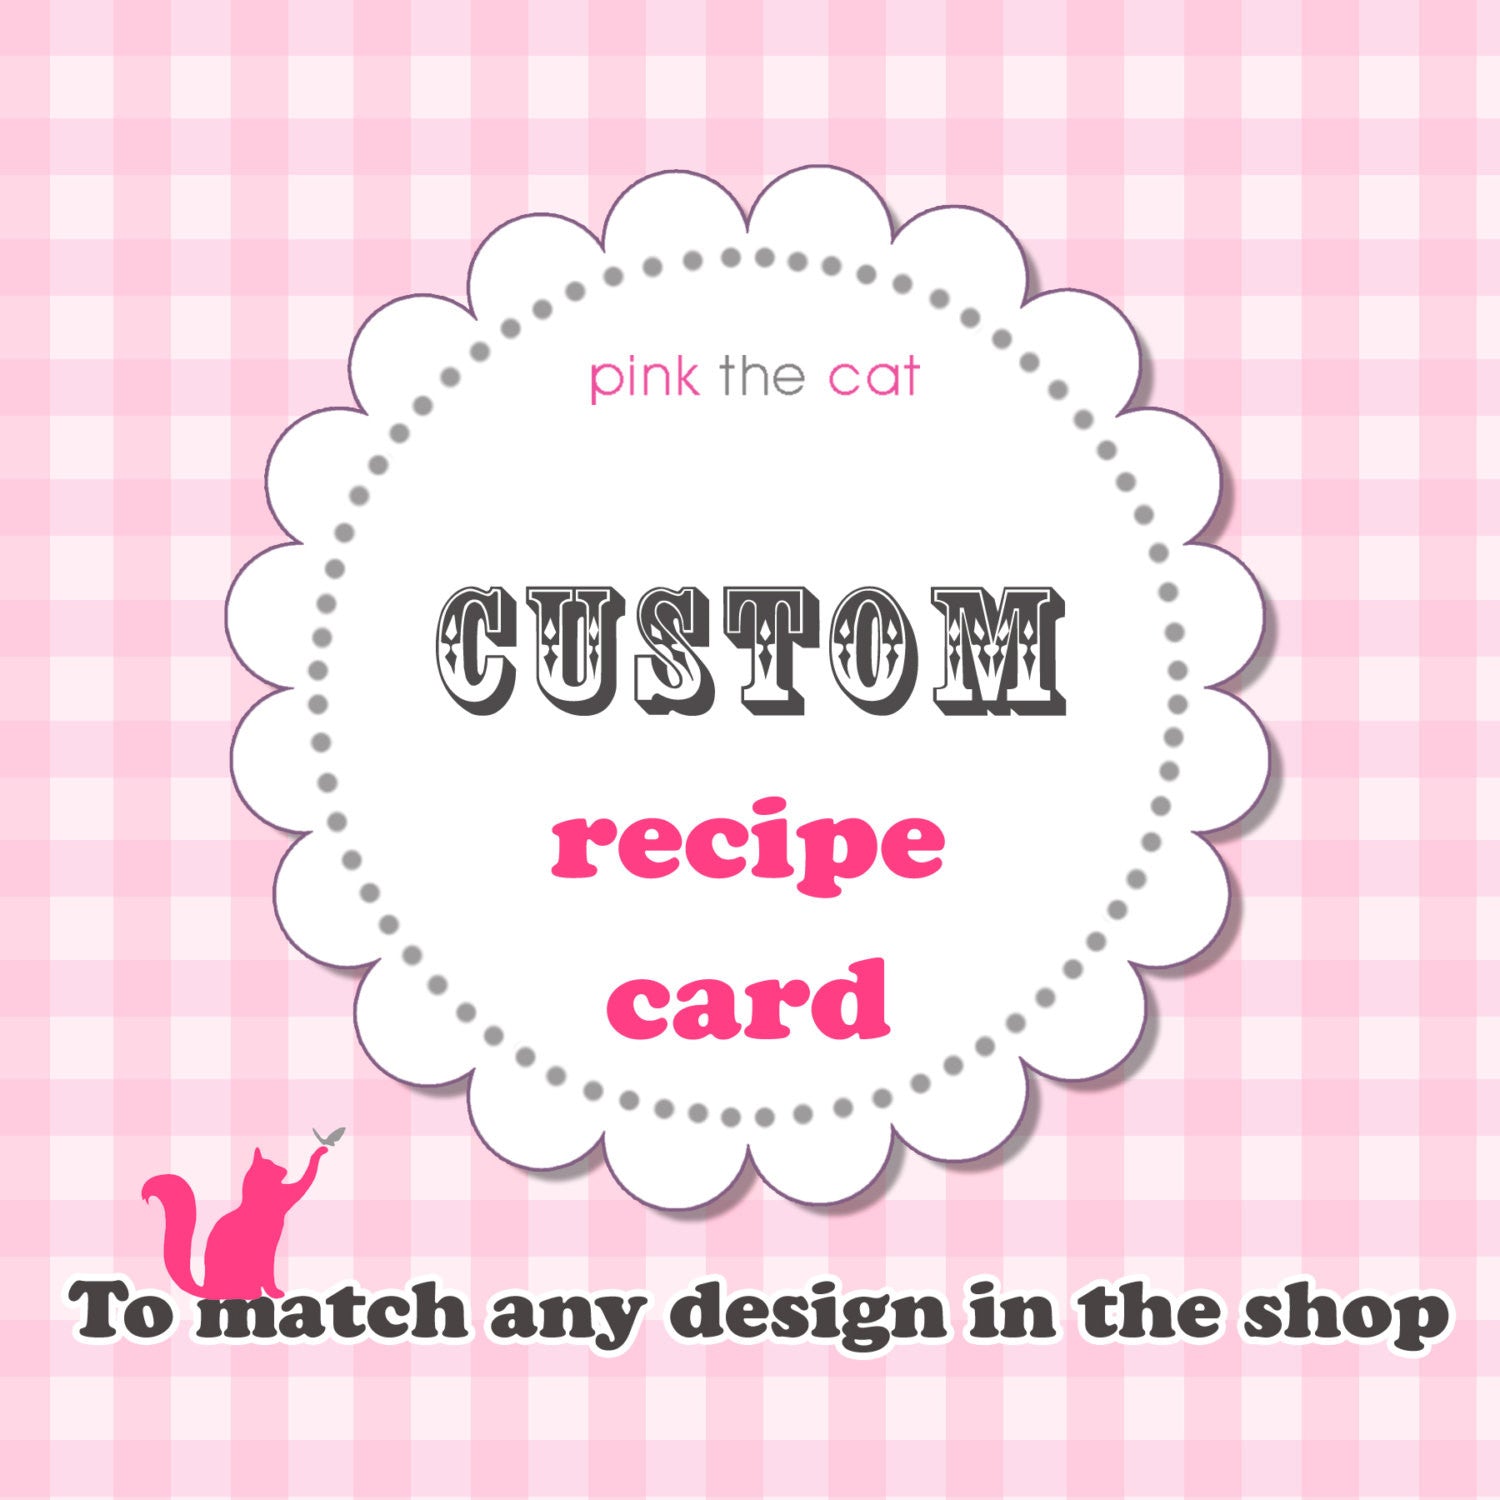 recipe card